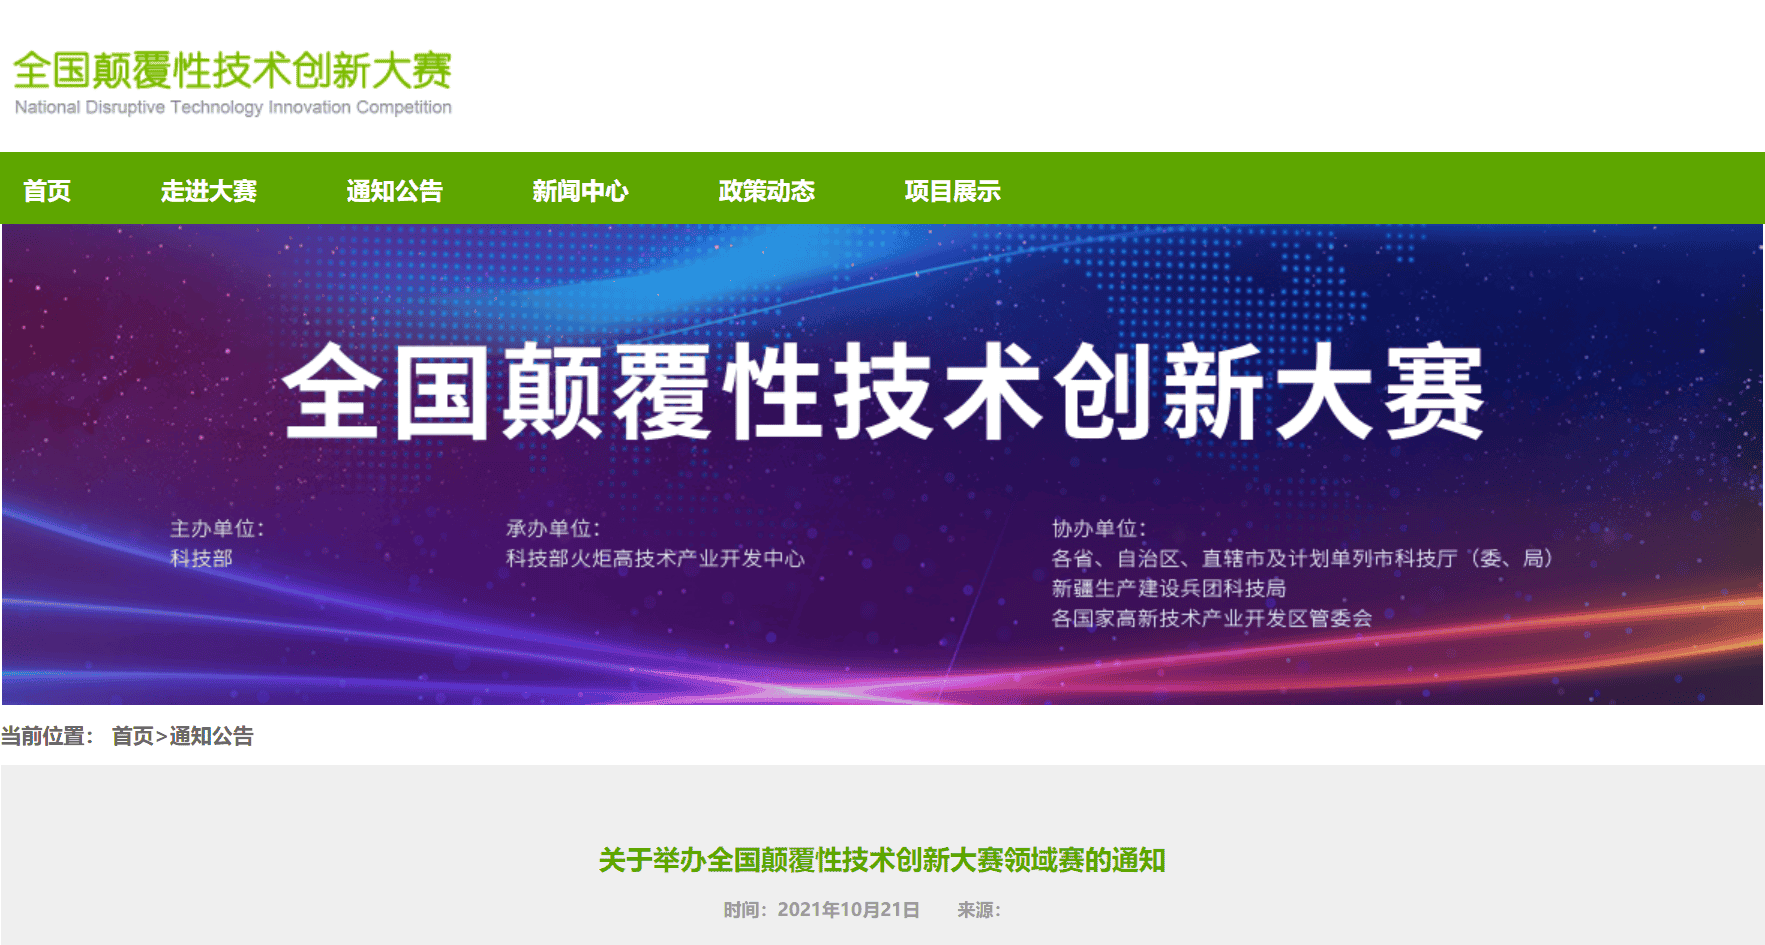 上海联净全国颠覆性技术创新大赛领域赛入围